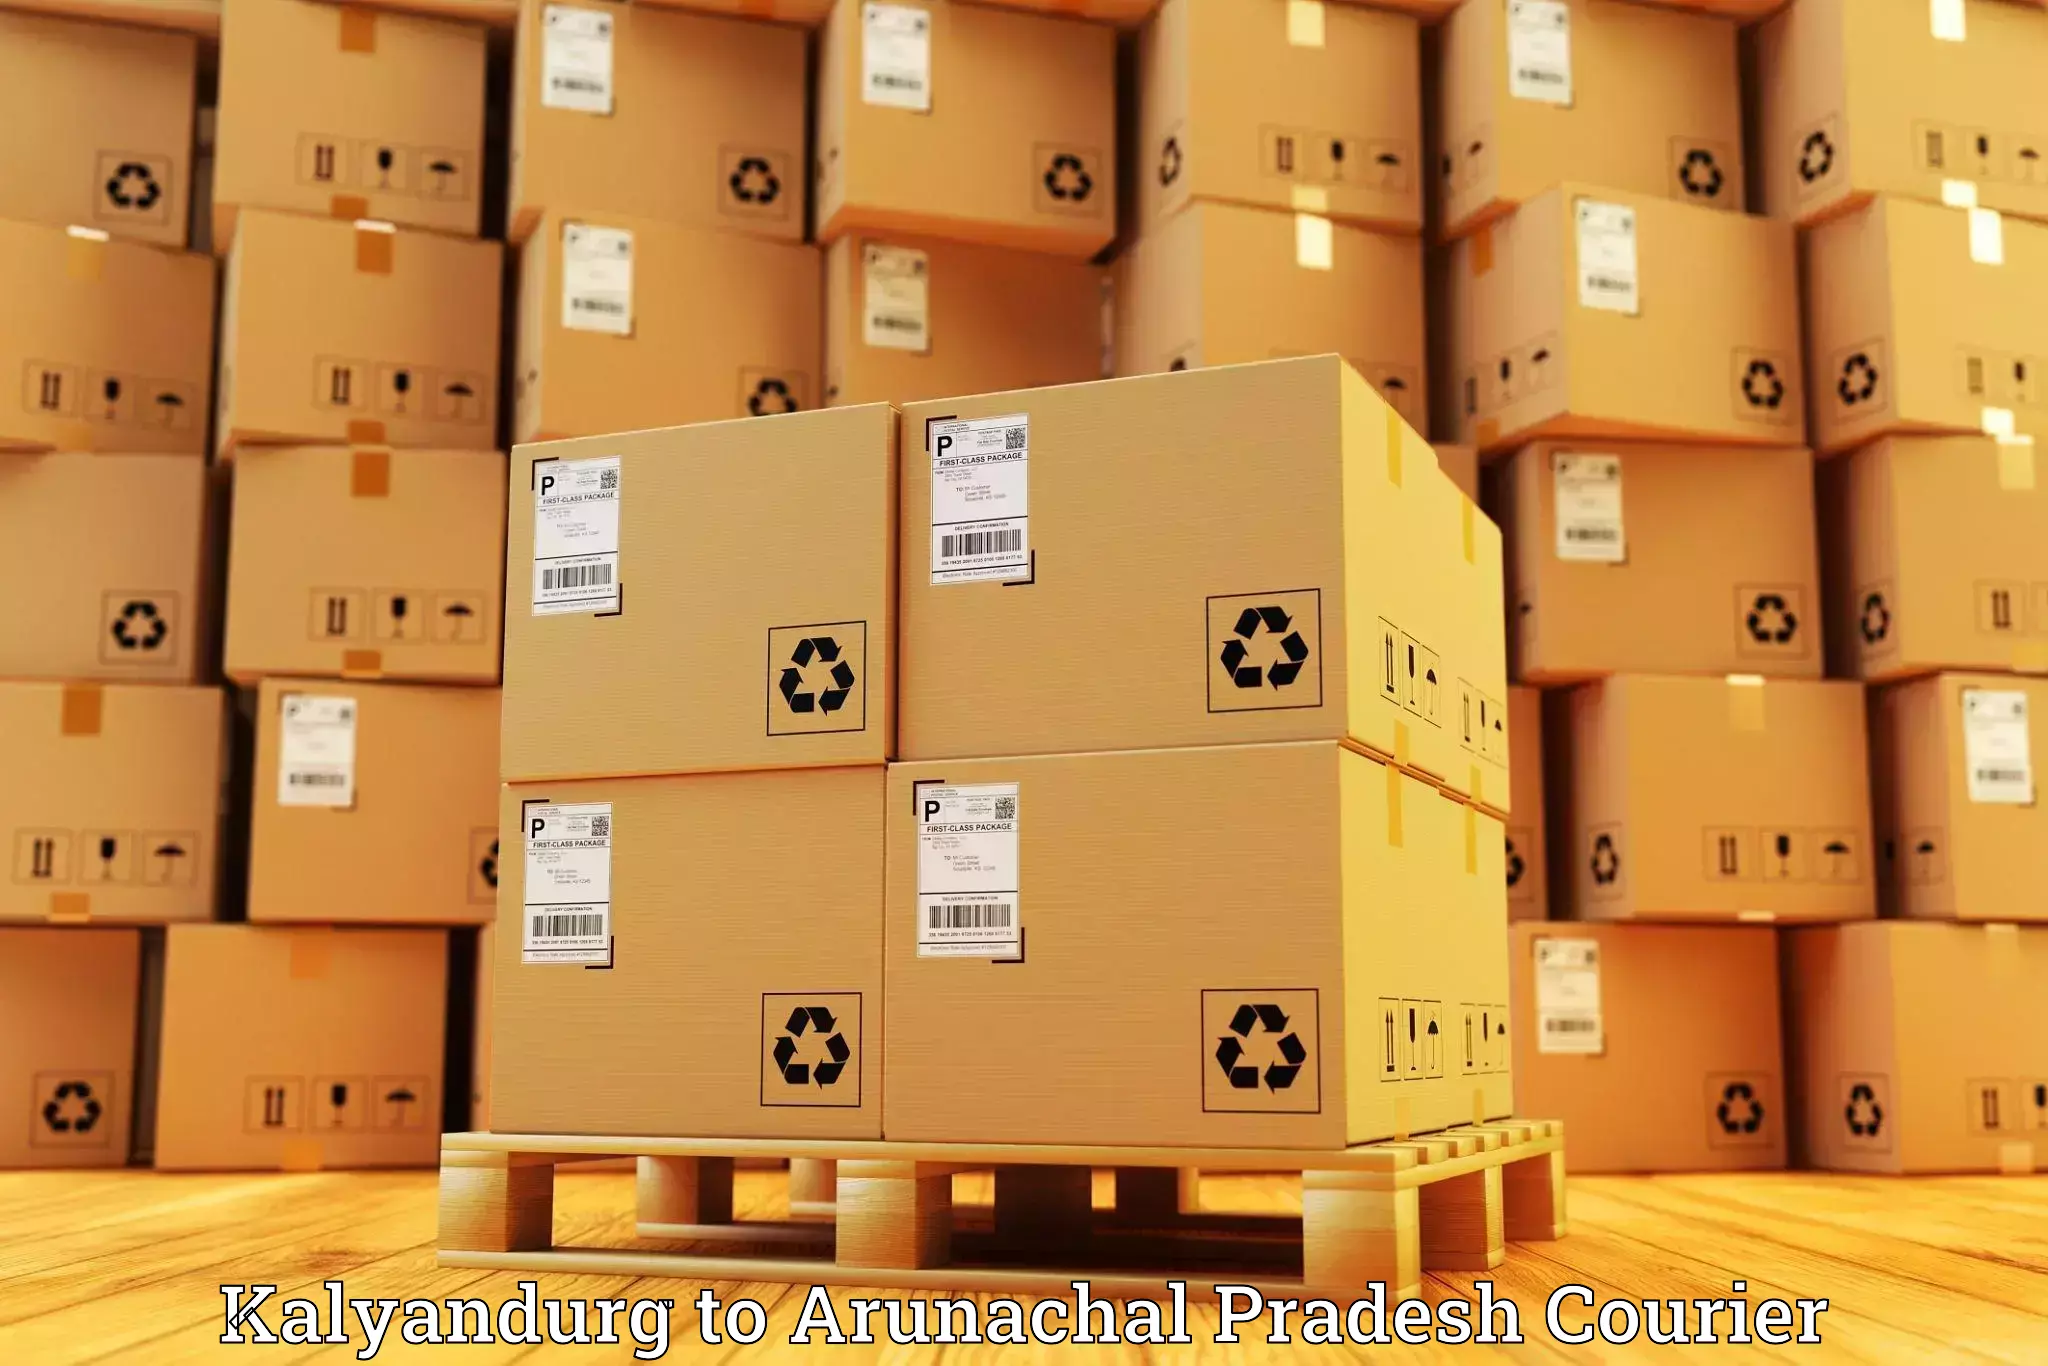 Courier service innovation Kalyandurg to Arunachal Pradesh